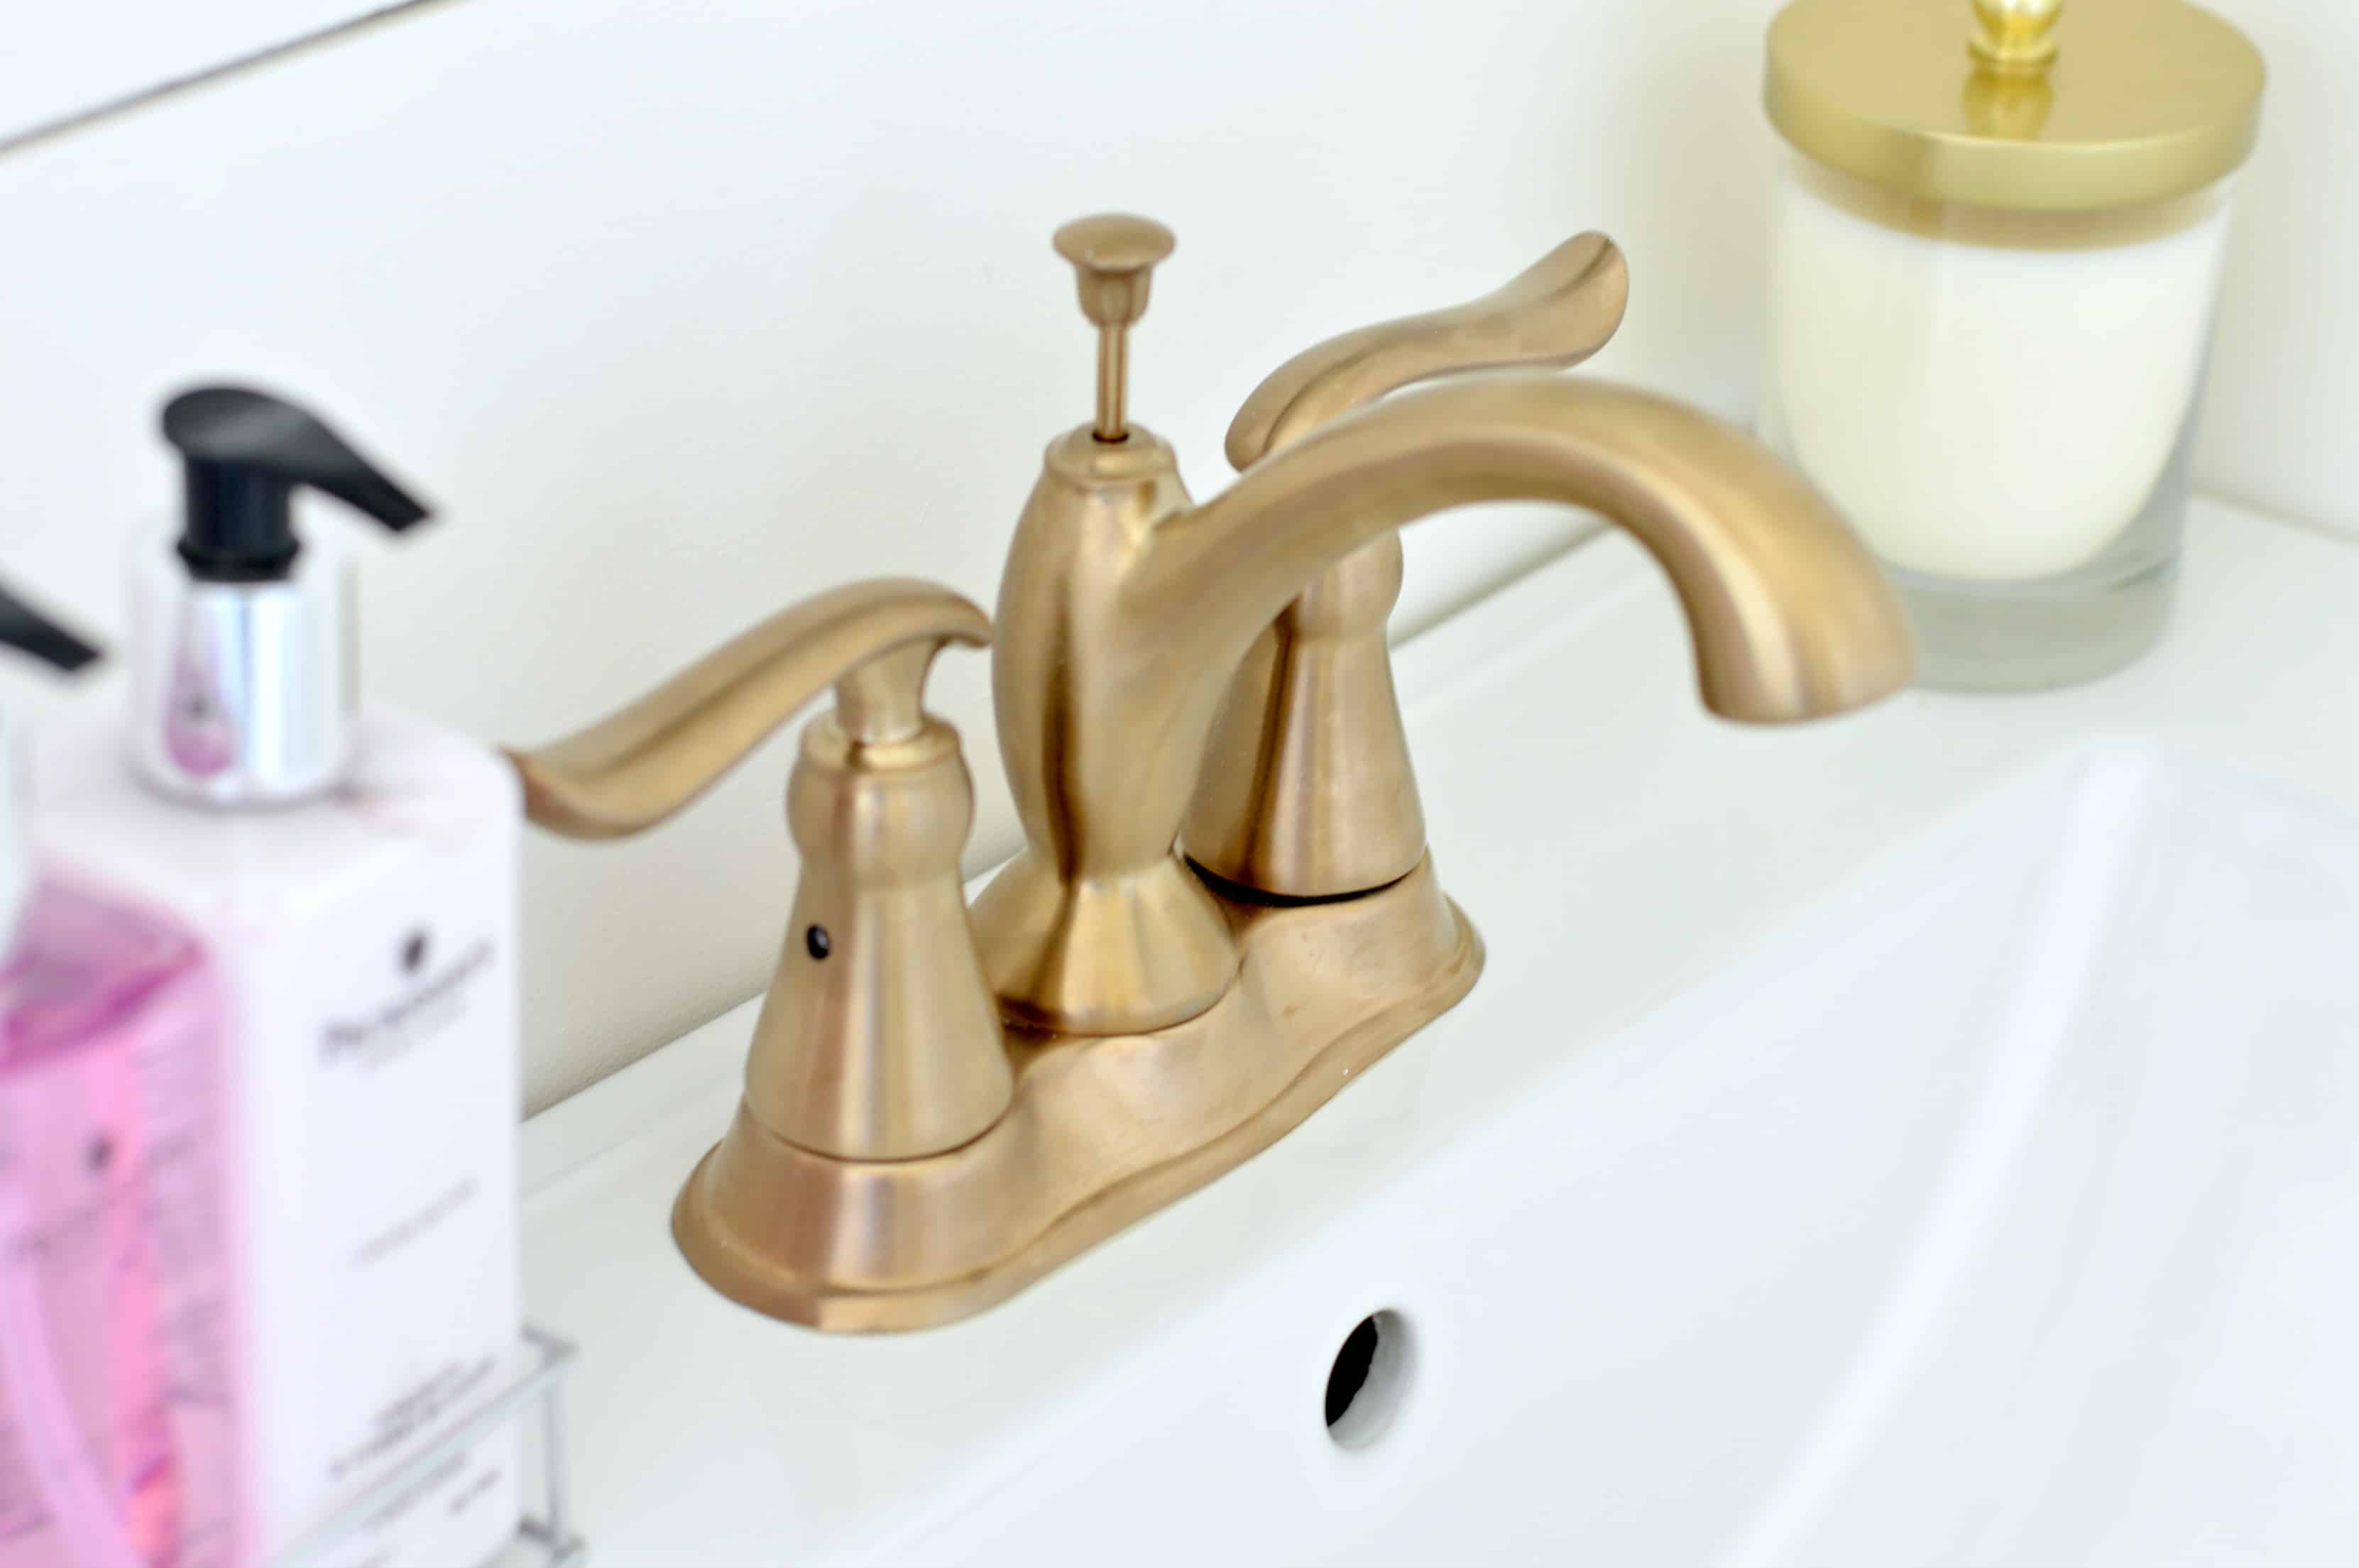 Matte brass bathroom faucet